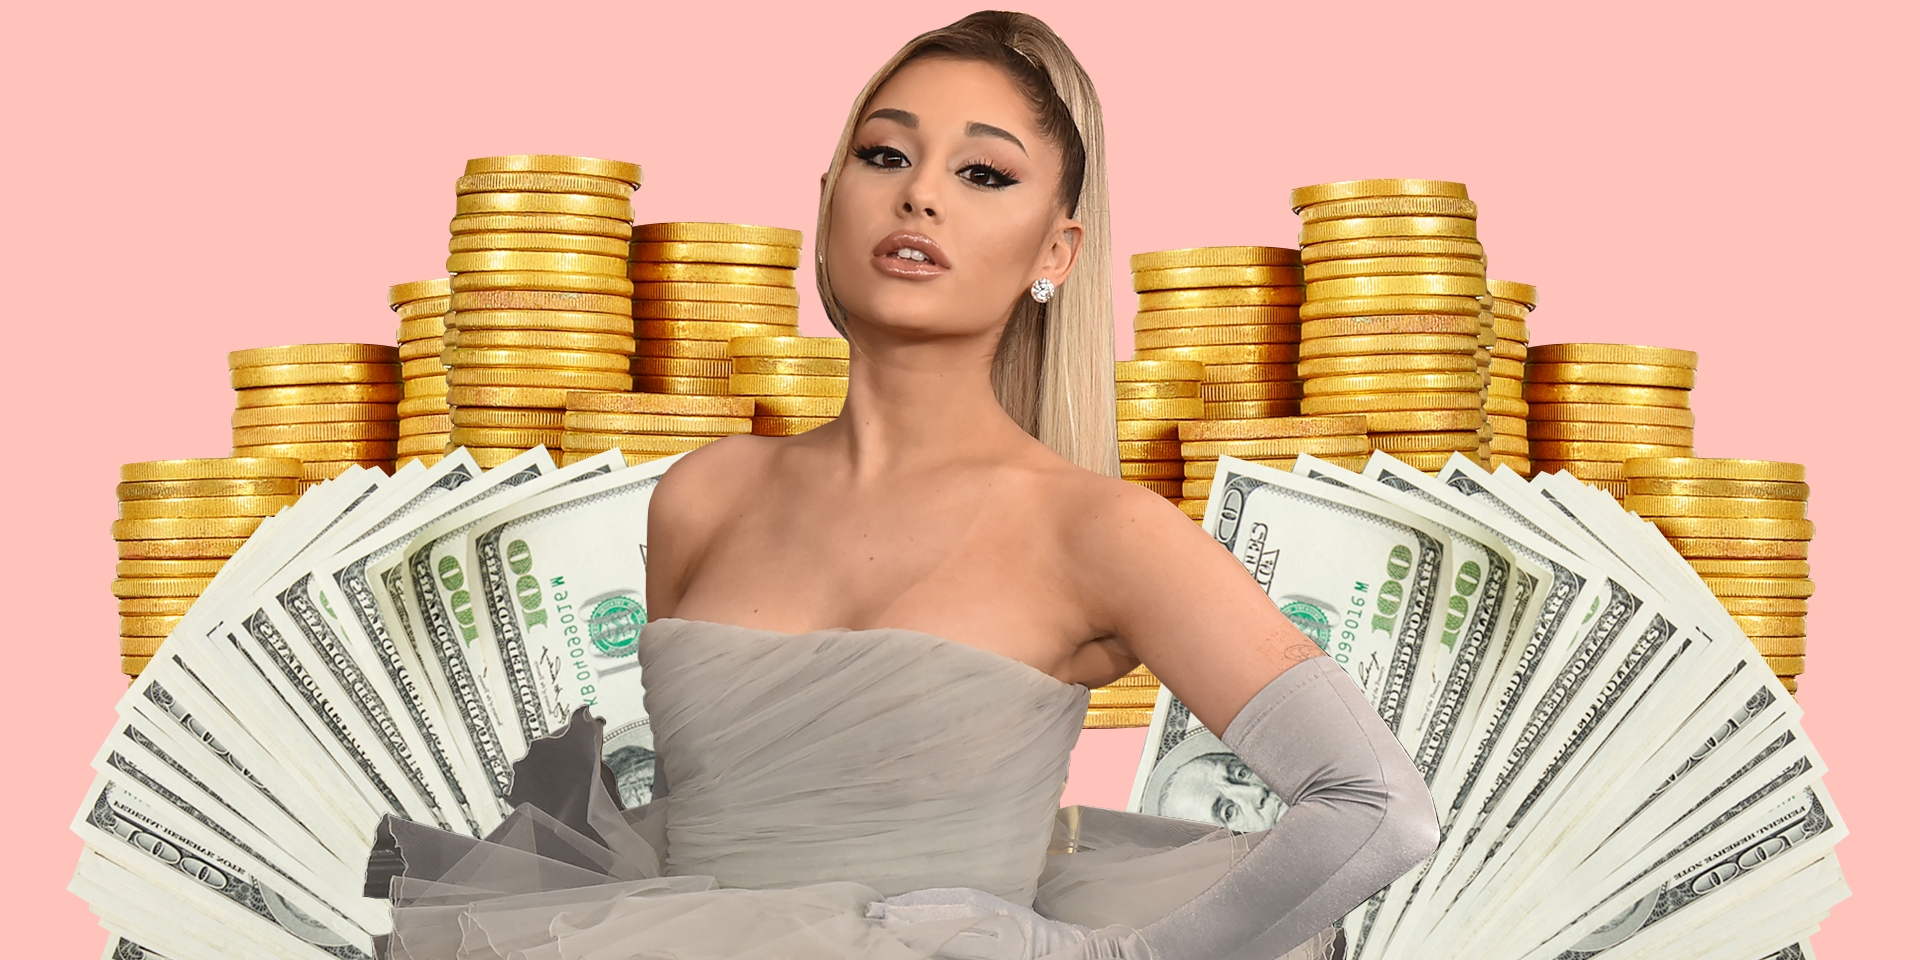 El valor neto de Ariana Grande te dejará literalmente boquiabierto